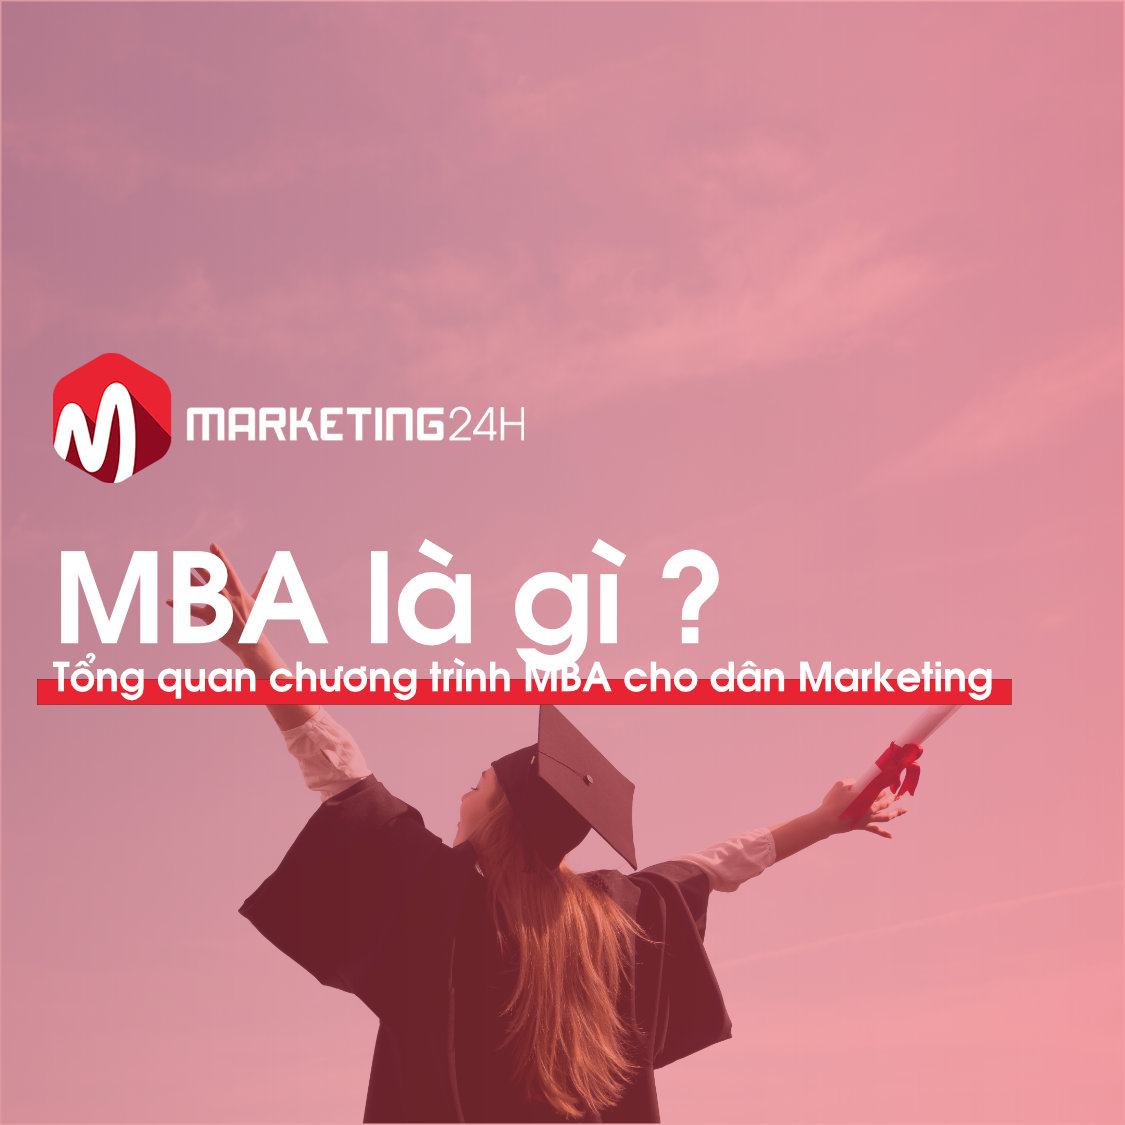 MBA là gì? Tổng quan chương trình MBA cho dân Marketing